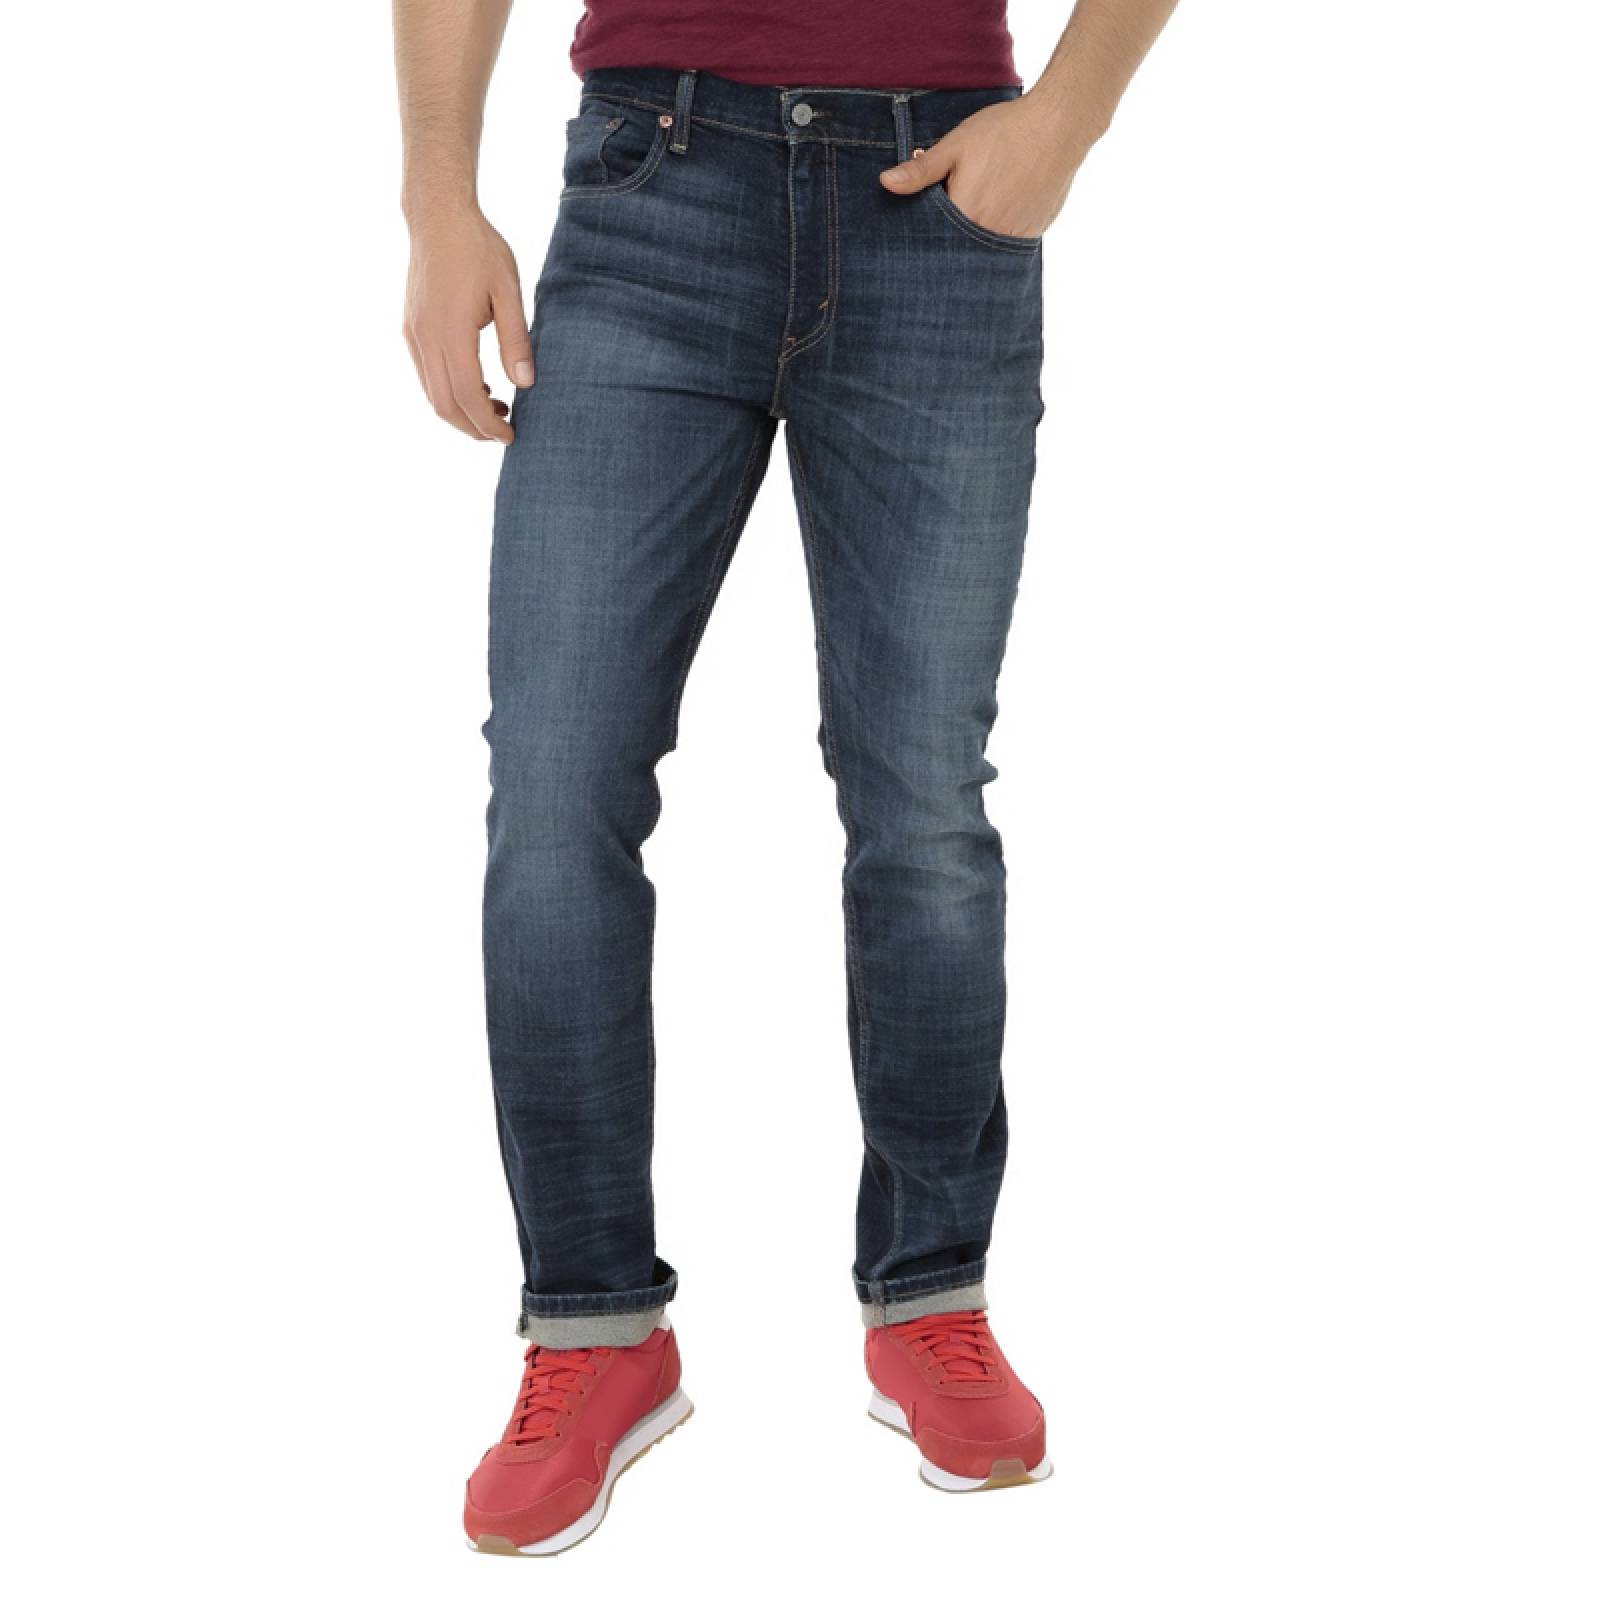 Jeans Levis 511 Slim Fit 045112836